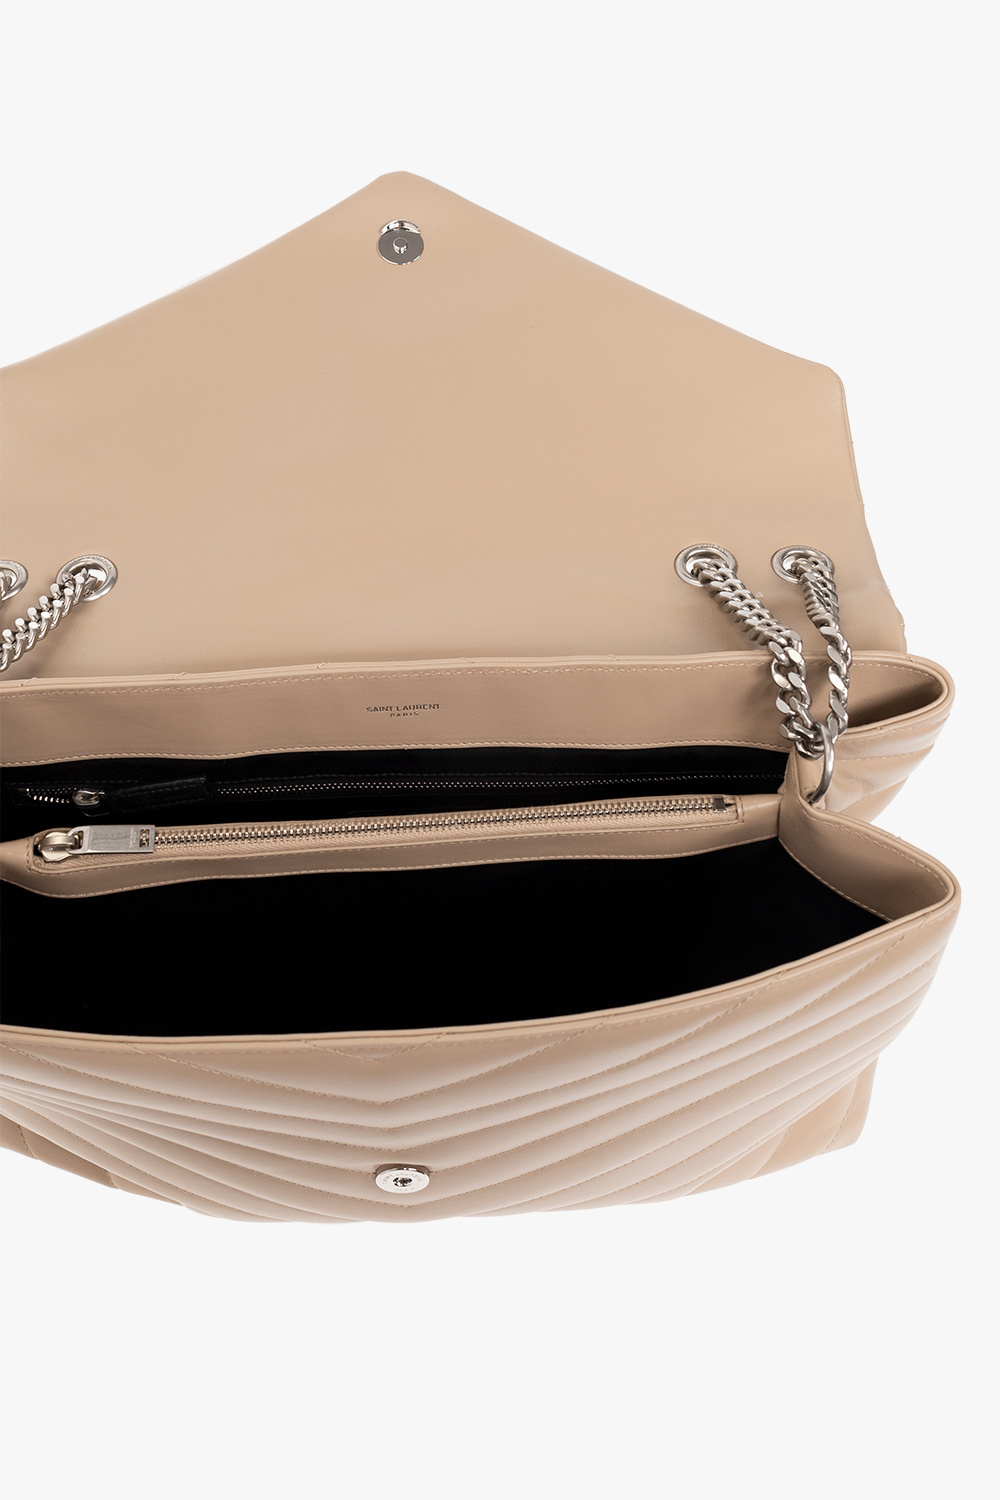 Saint Laurent 'Loulou Large' shoulder bag, Women's Bags